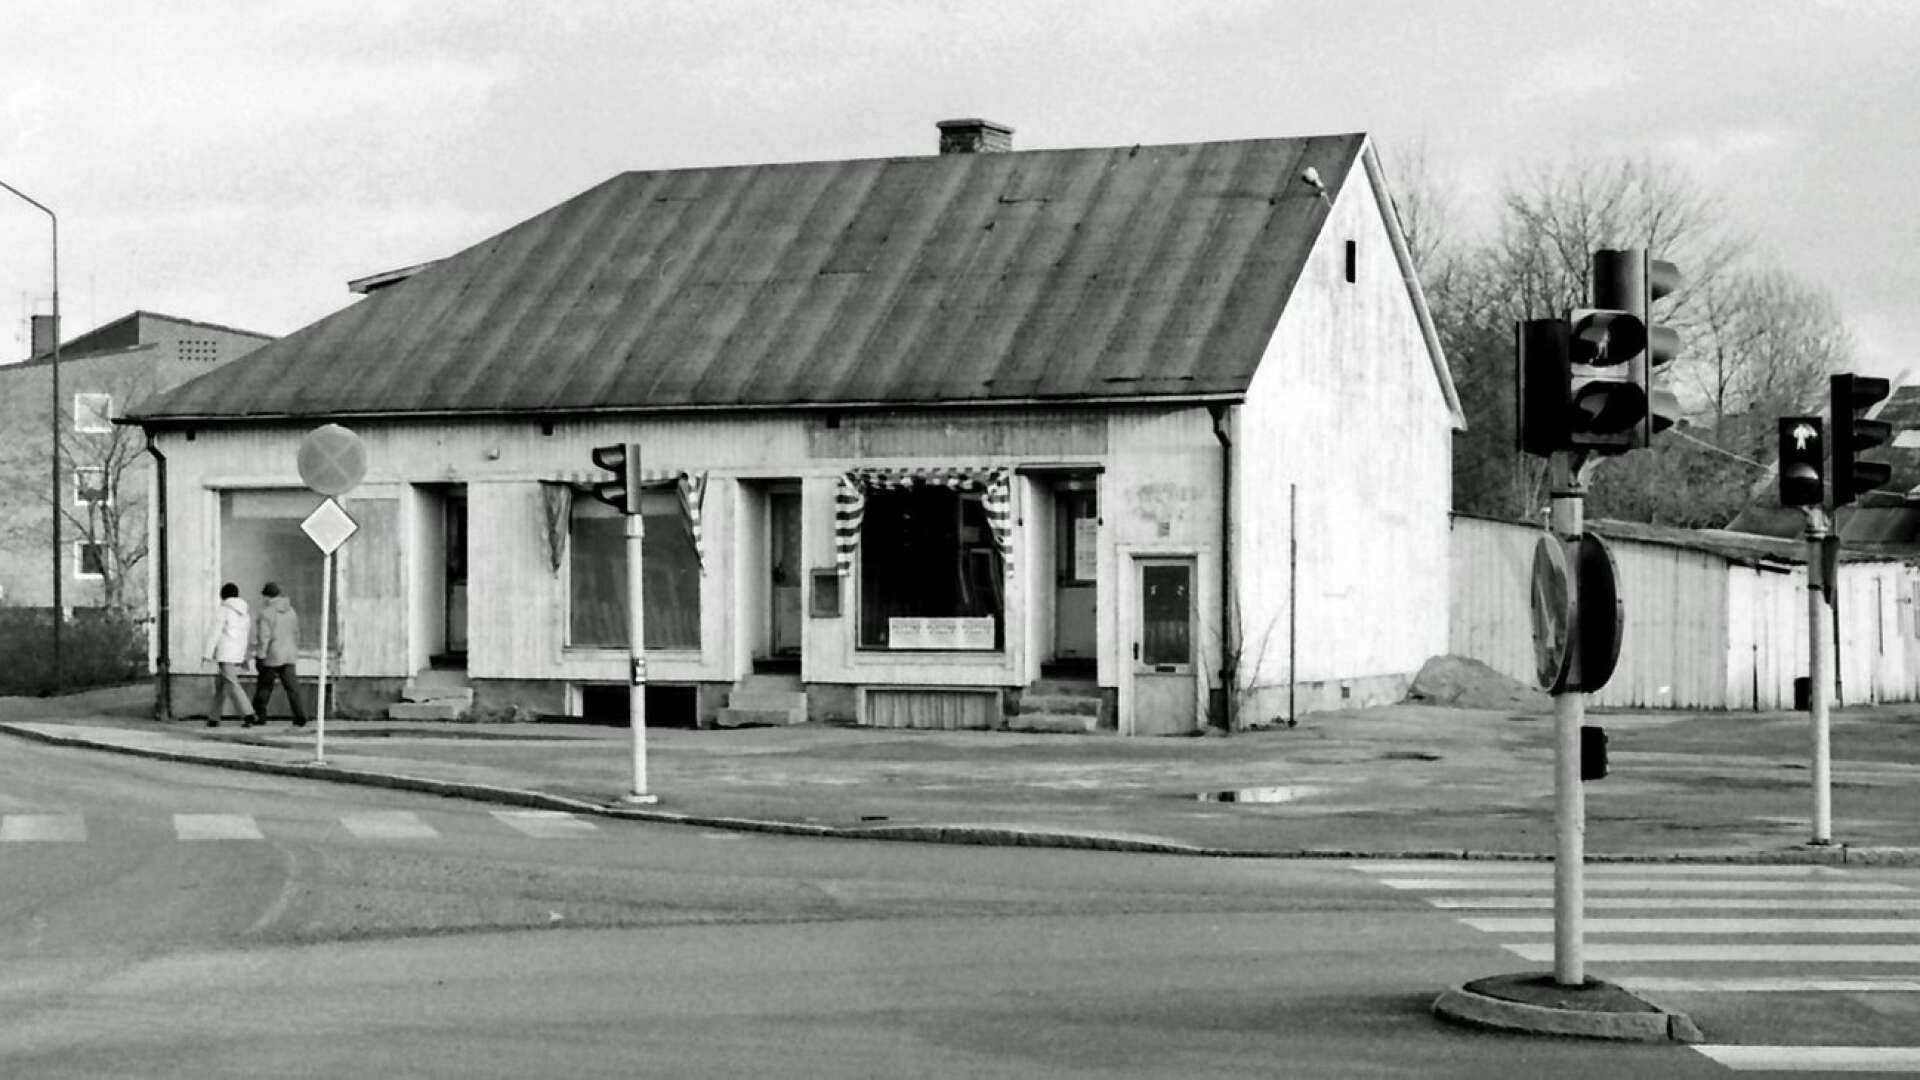 I början av 1983 berättade Säffle-Tidningen att detta hus, beläget norr om busstorget, skulle rivas. Där hade det varit blomsterhandel, herrfrisör och damfrisering. Dessutom en tid till och med ett konstgalleri i källaren. 